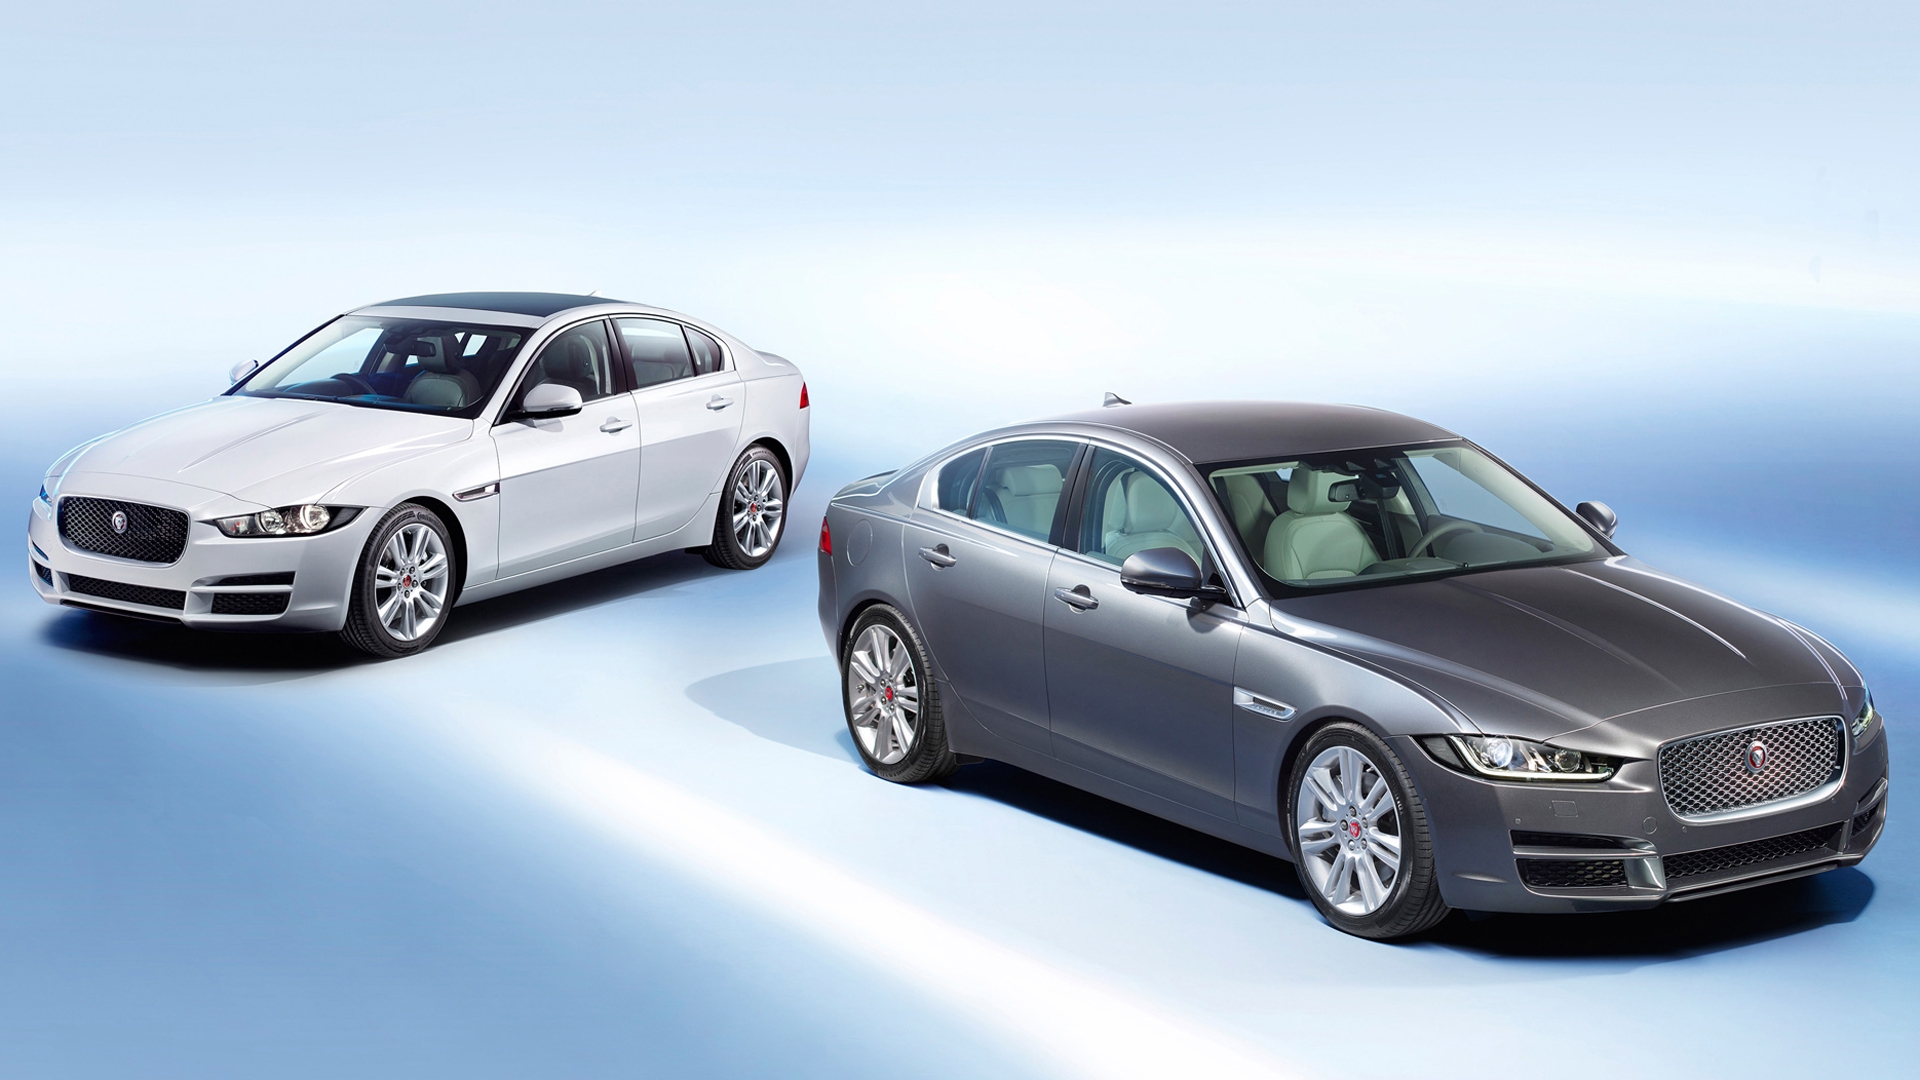 fond d'écran jaguar xe,véhicule terrestre,véhicule,voiture,véhicule de luxe,voiture de luxe personnelle